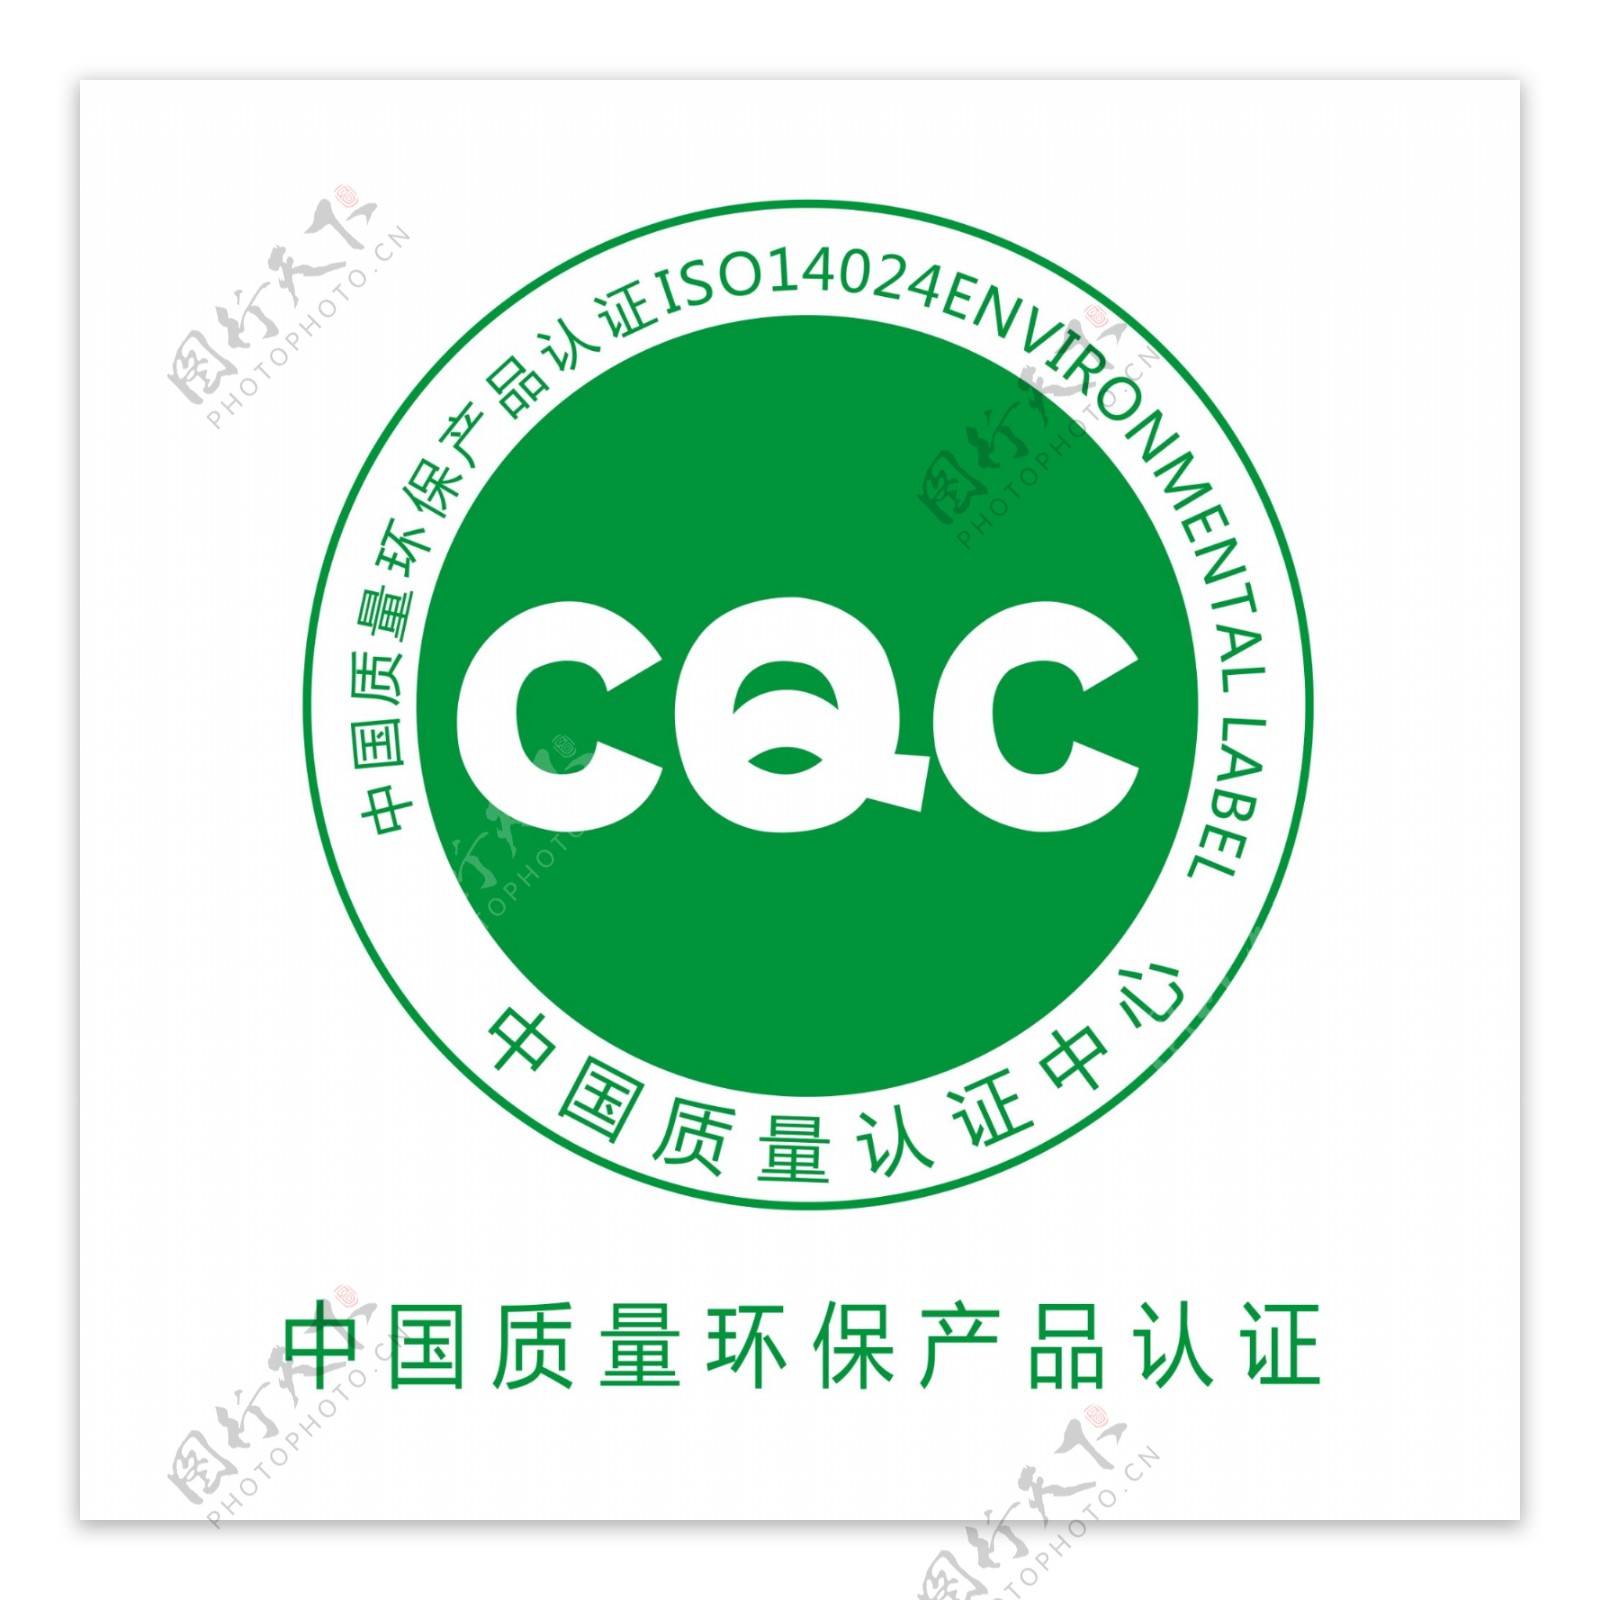 中国质量环保产品标识